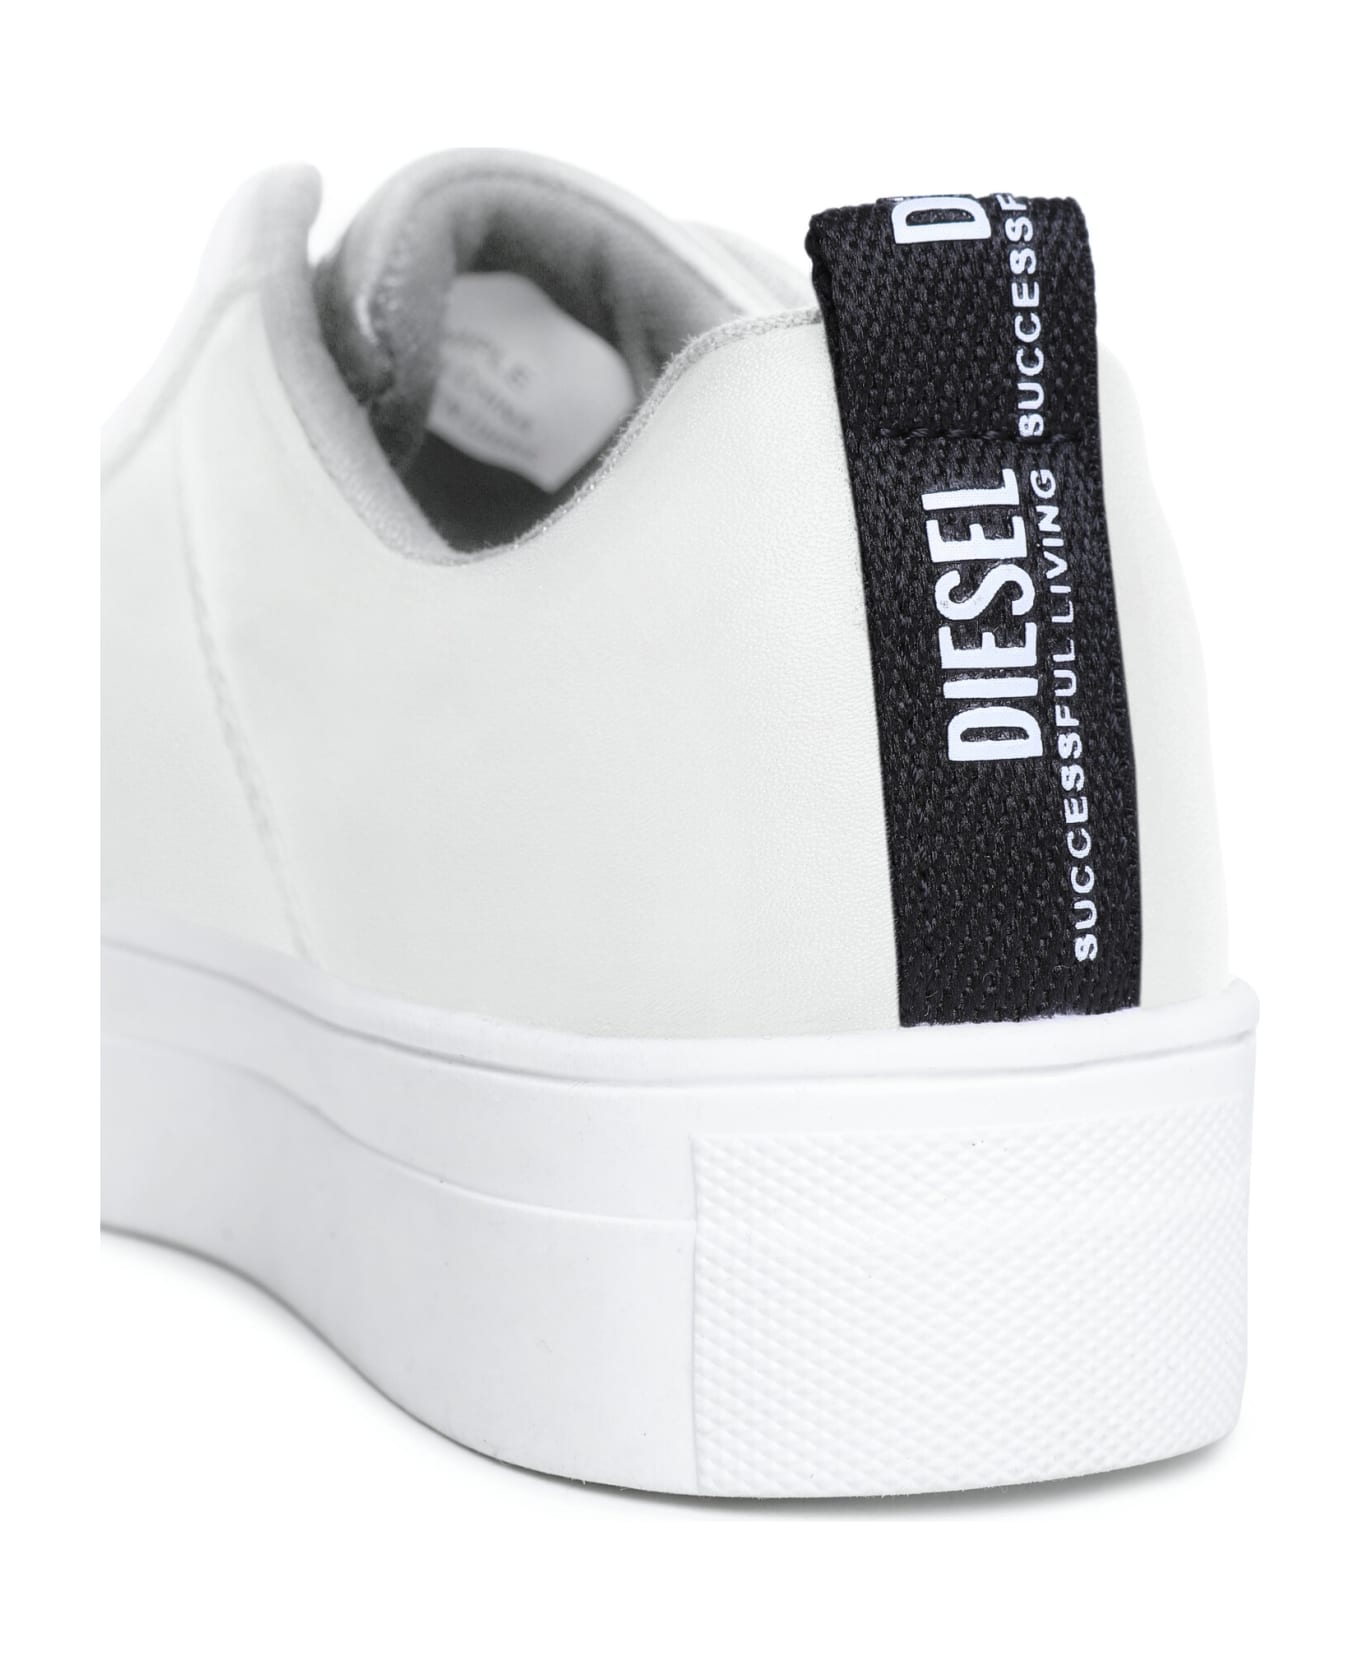 Diesel Vaneela S-vaneela Lc  Sneakers Diesel - White